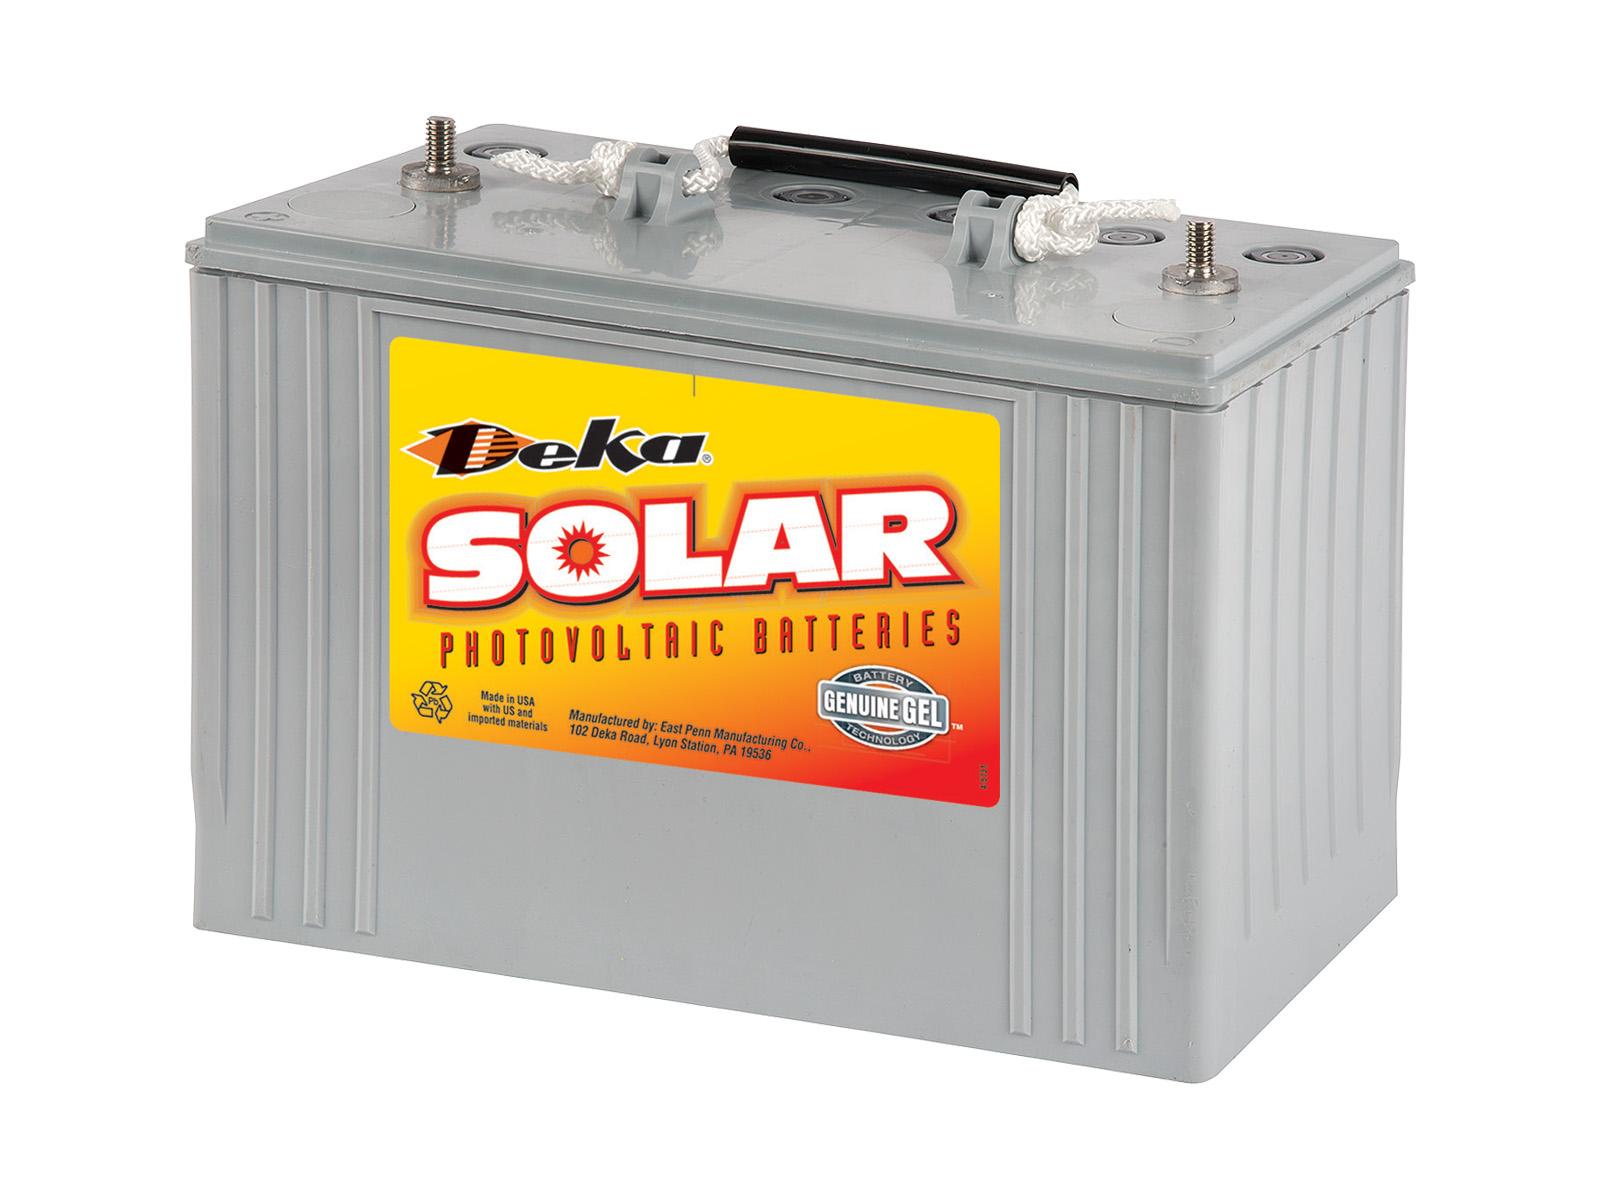 oorsprong Vlot Faial Battery, 12V, 108Ah at C/100, GEL, MK 8G31-DEKA Deep Cycle Solar